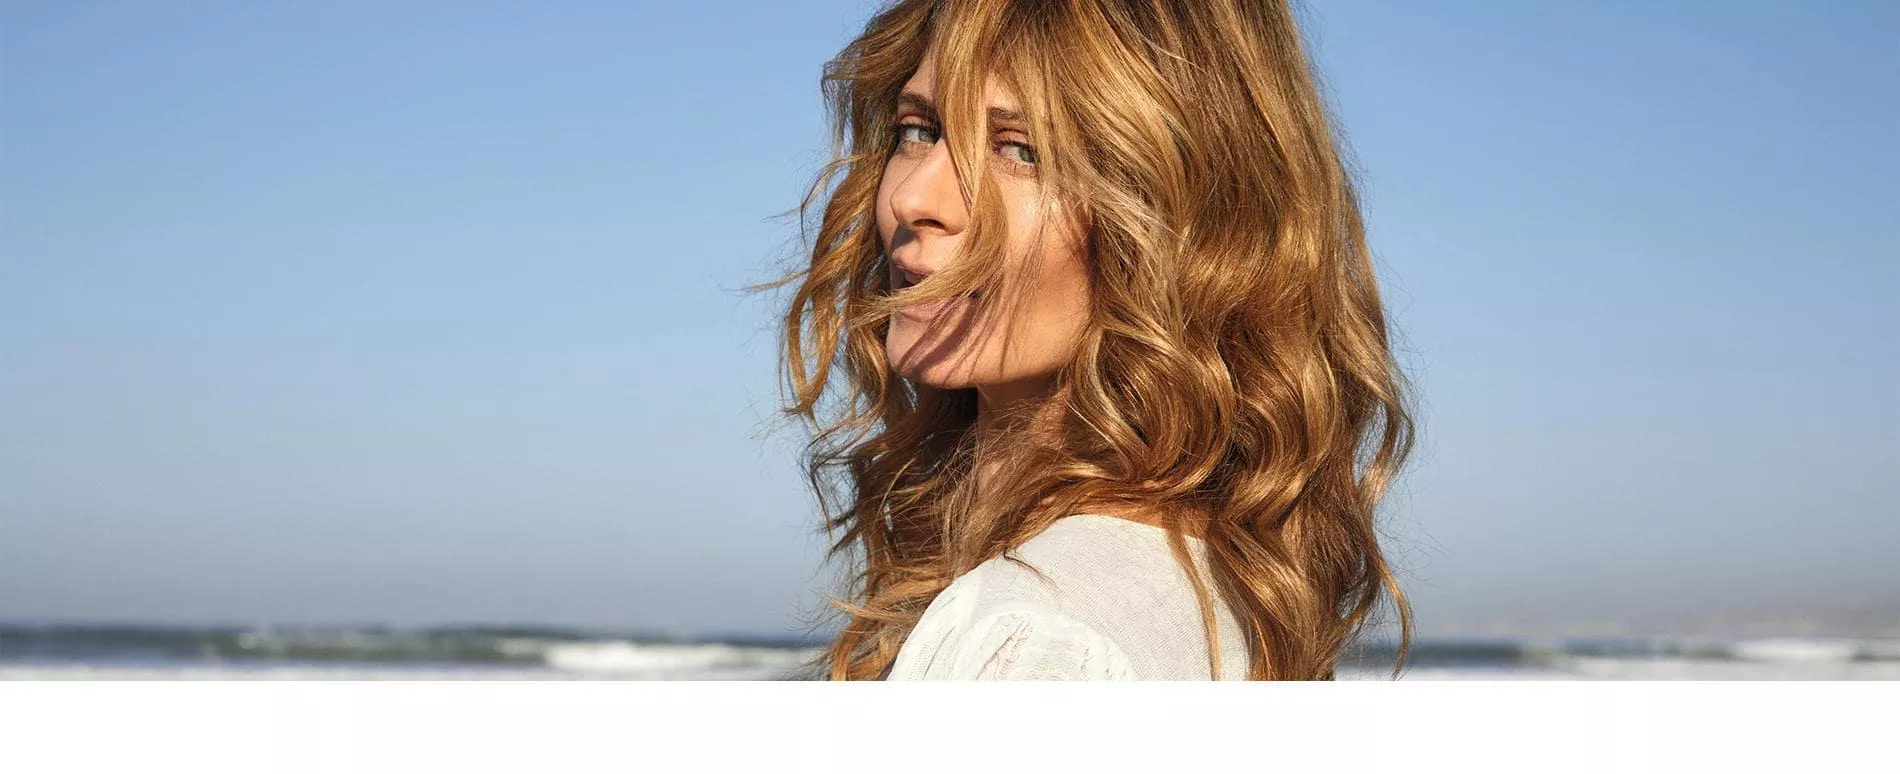 Προφίλ γυναίκας στην παραλία, με σγουρά, χρυσαφένια ξανθά μαλλιά που δημιουργήθηκαν με την Illumina Color